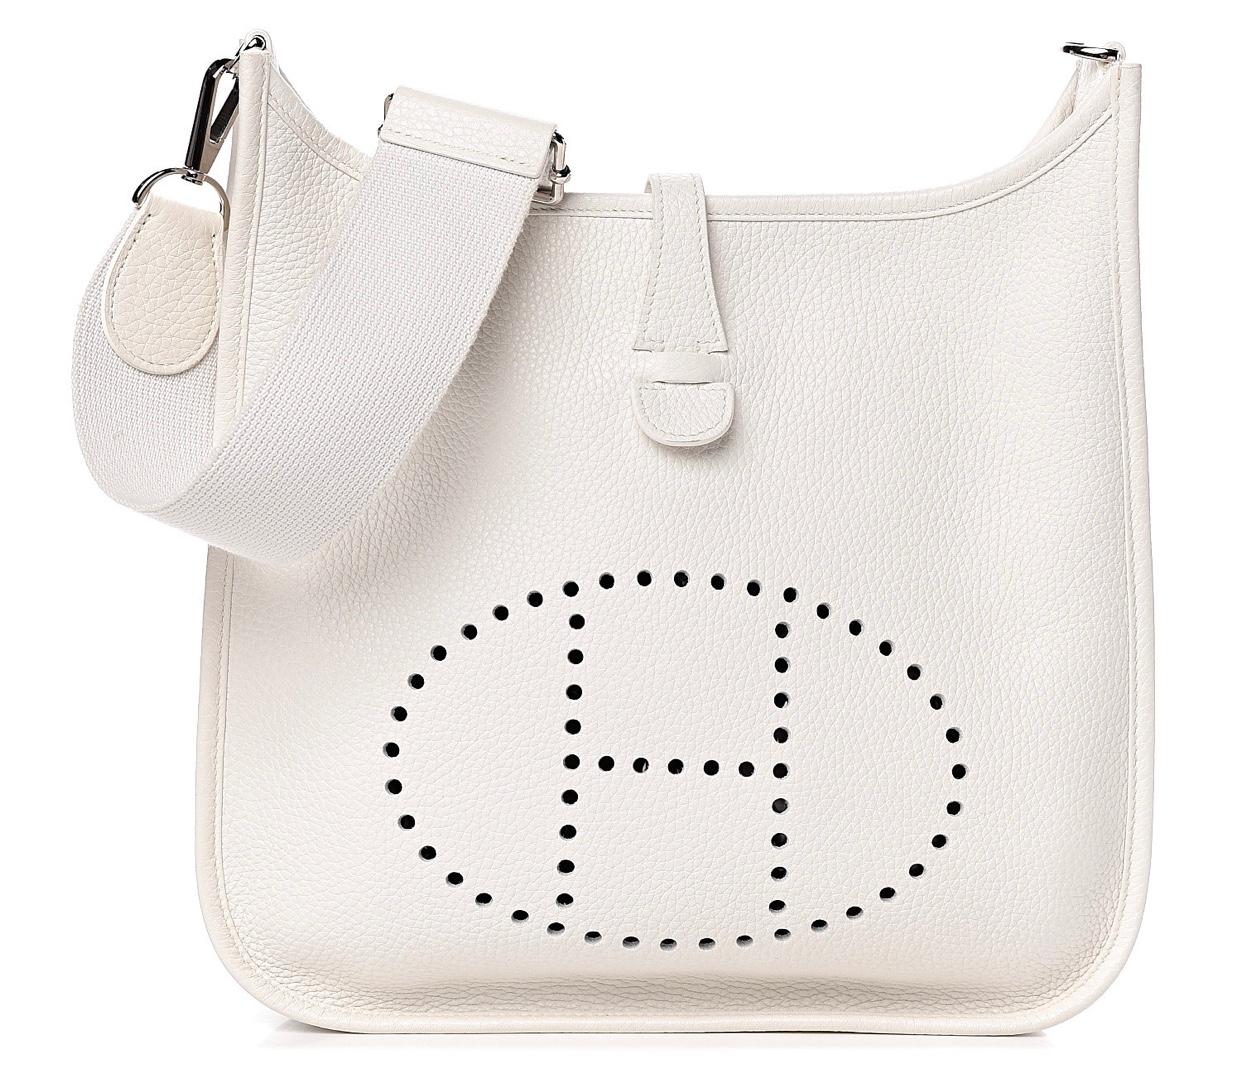 Hermes Evelyne  PM shoulder bag
White Leather bag 

One inside pocket 
Length 11 